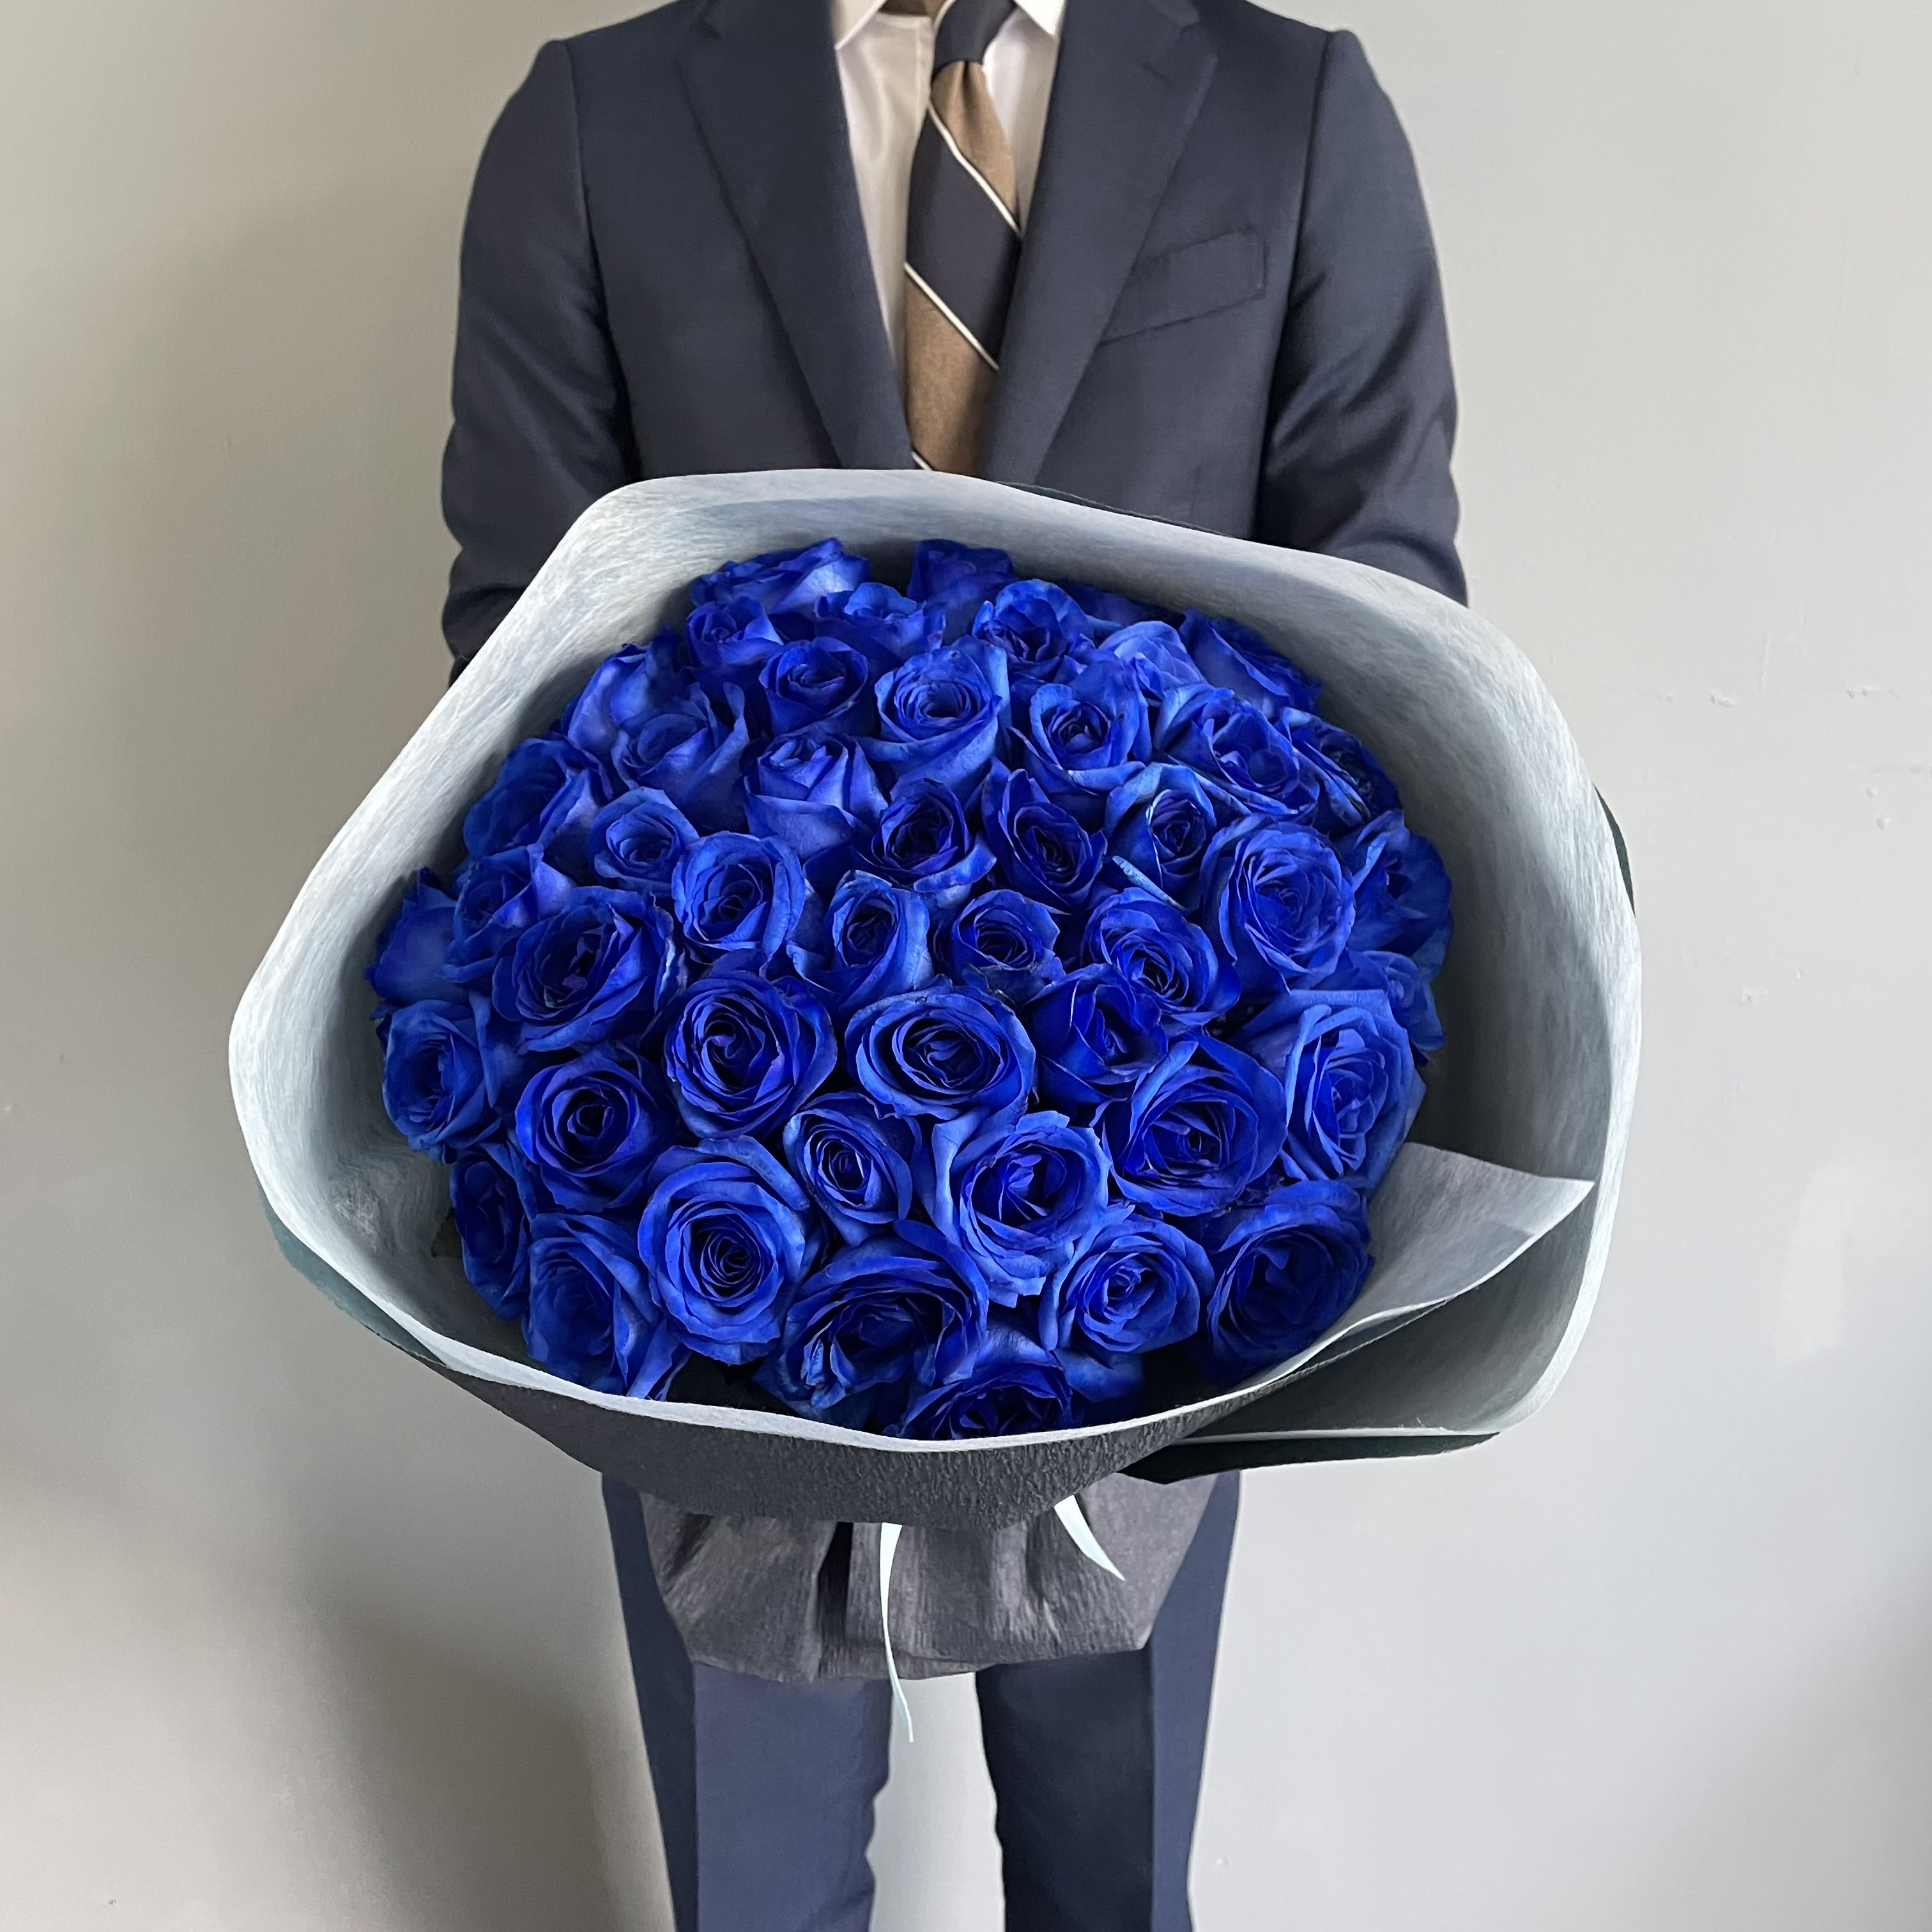 売れ筋がひ ブルーローズ 青い薔薇 花束 50本のブルーローズブーケ Fucoa Cl